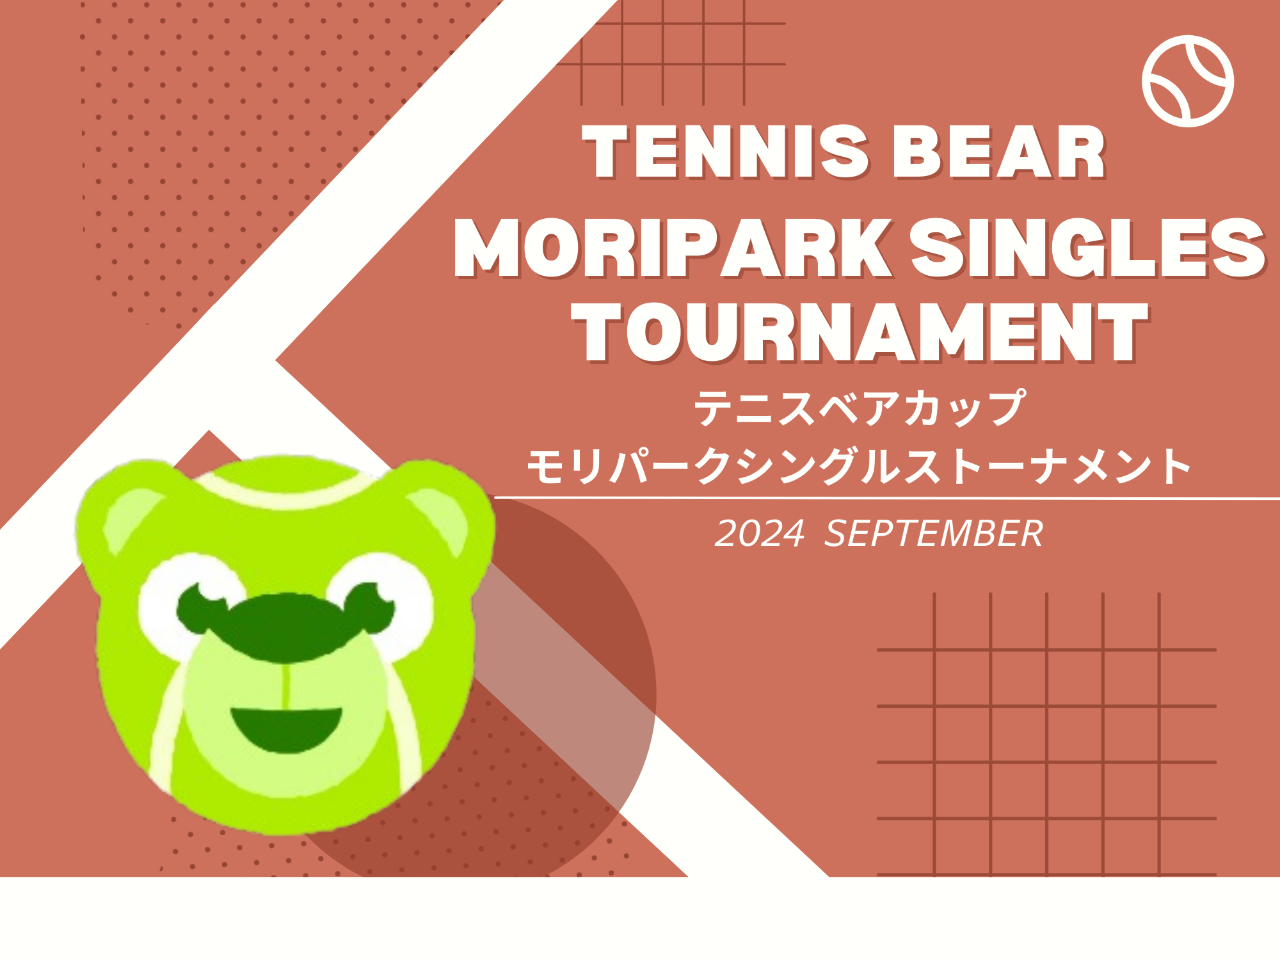 テニスベアカップ モリパークシングルストーナメント　モリパーク テニスガーデン(東京都 昭島市)